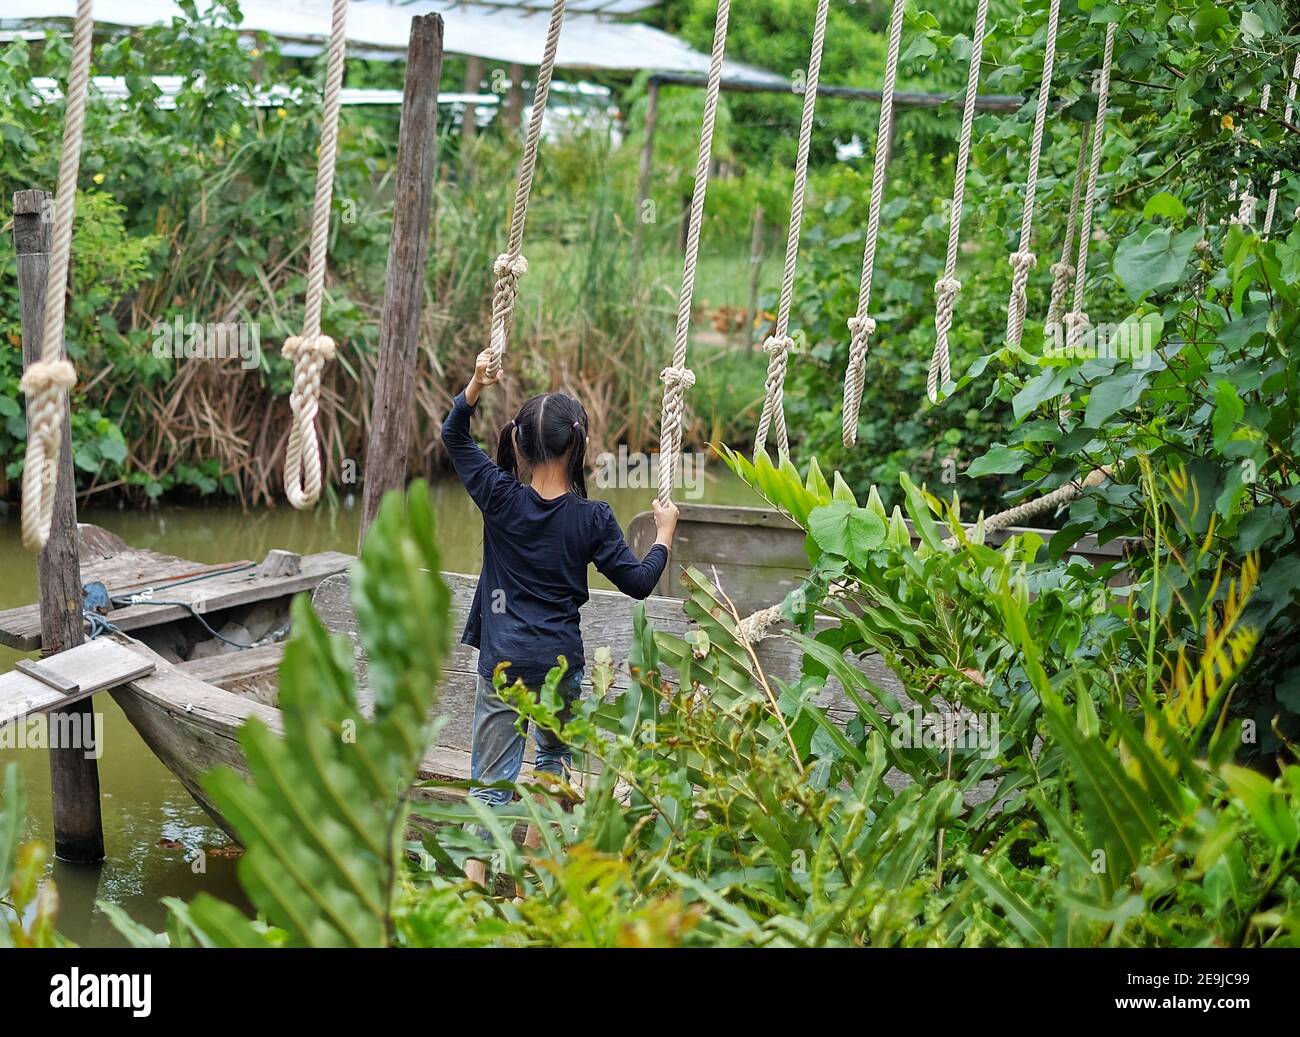 La vue arrière d'une jolie jeune fille asiatique essayant de traverser un petit canal en se équilibrant une bûche avec une corde sur sa tête pour l'aider Banque D'Images